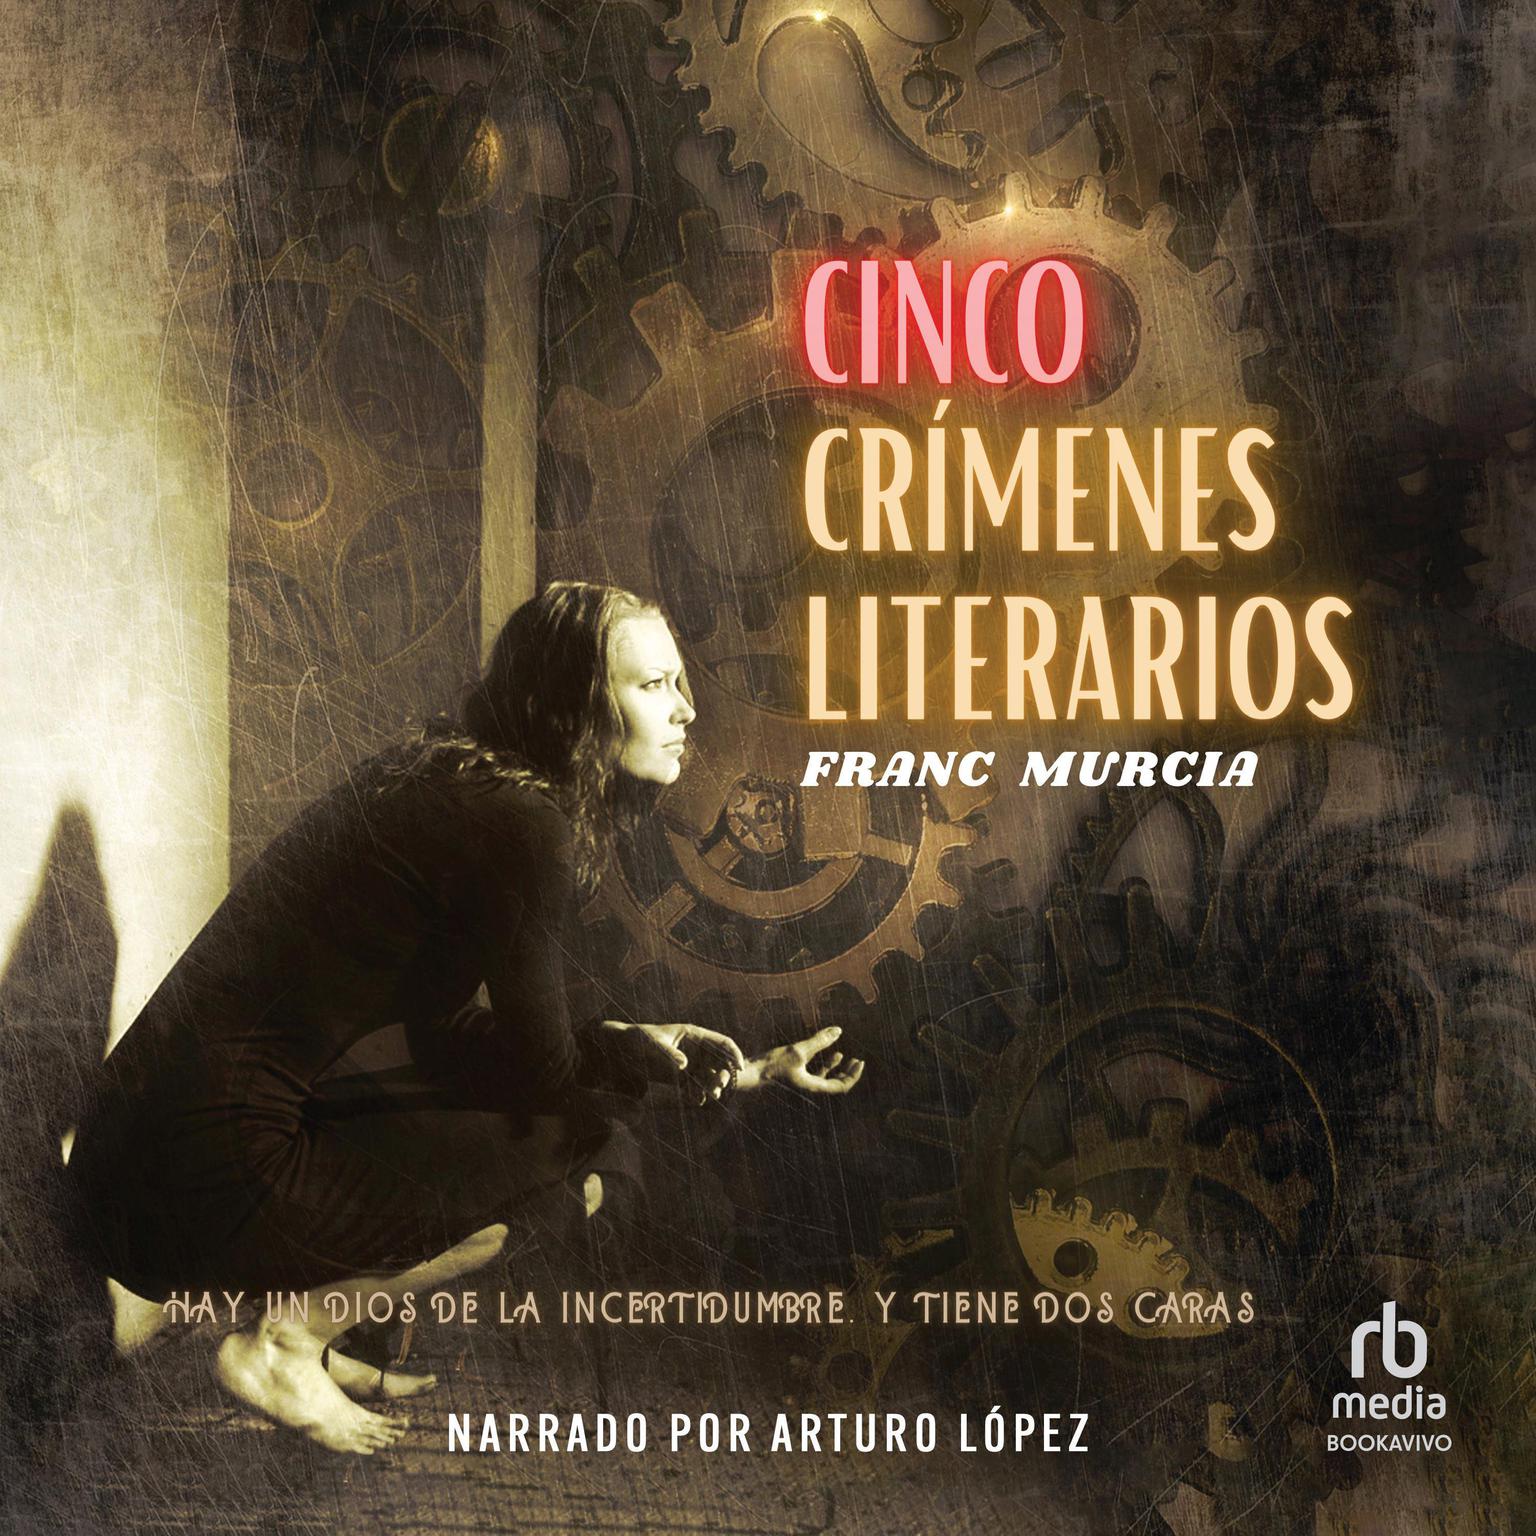 Cinco crímenes literarios Audiobook, by Franc Murcia